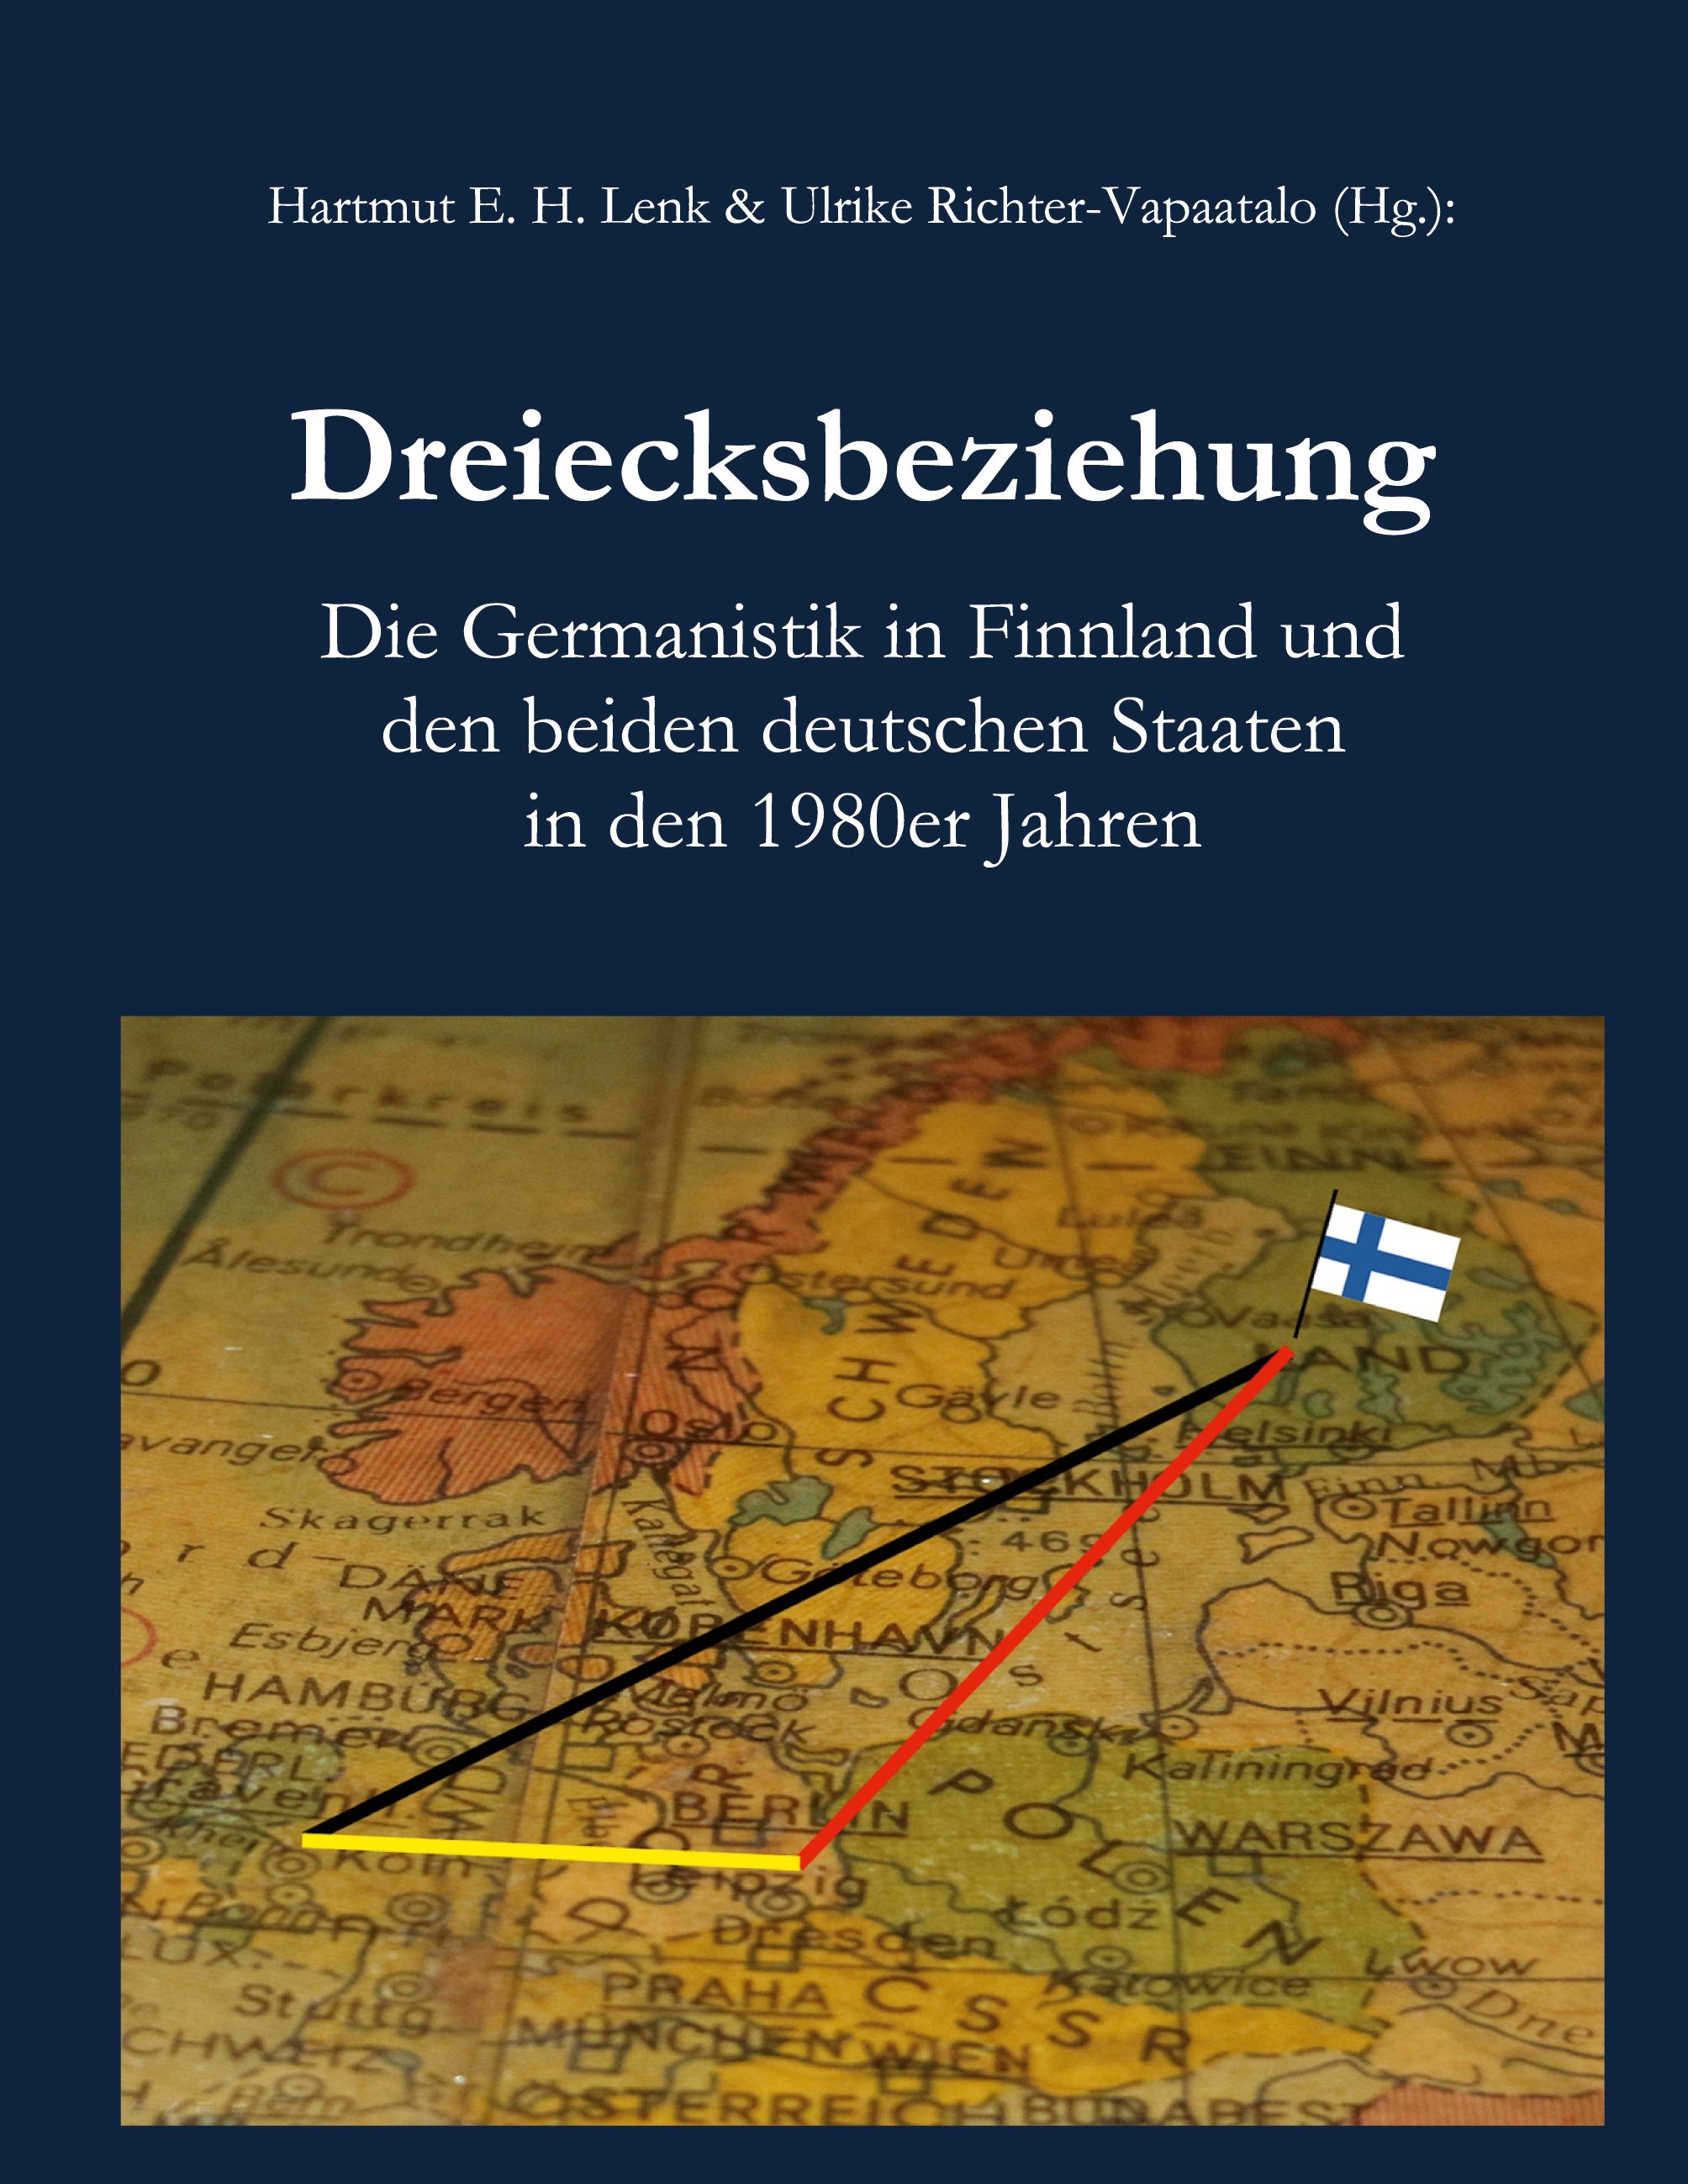 Hartmut E. H. Lenk & Ulrike Richter-Vapaatalo : Dreiecksbeziehung